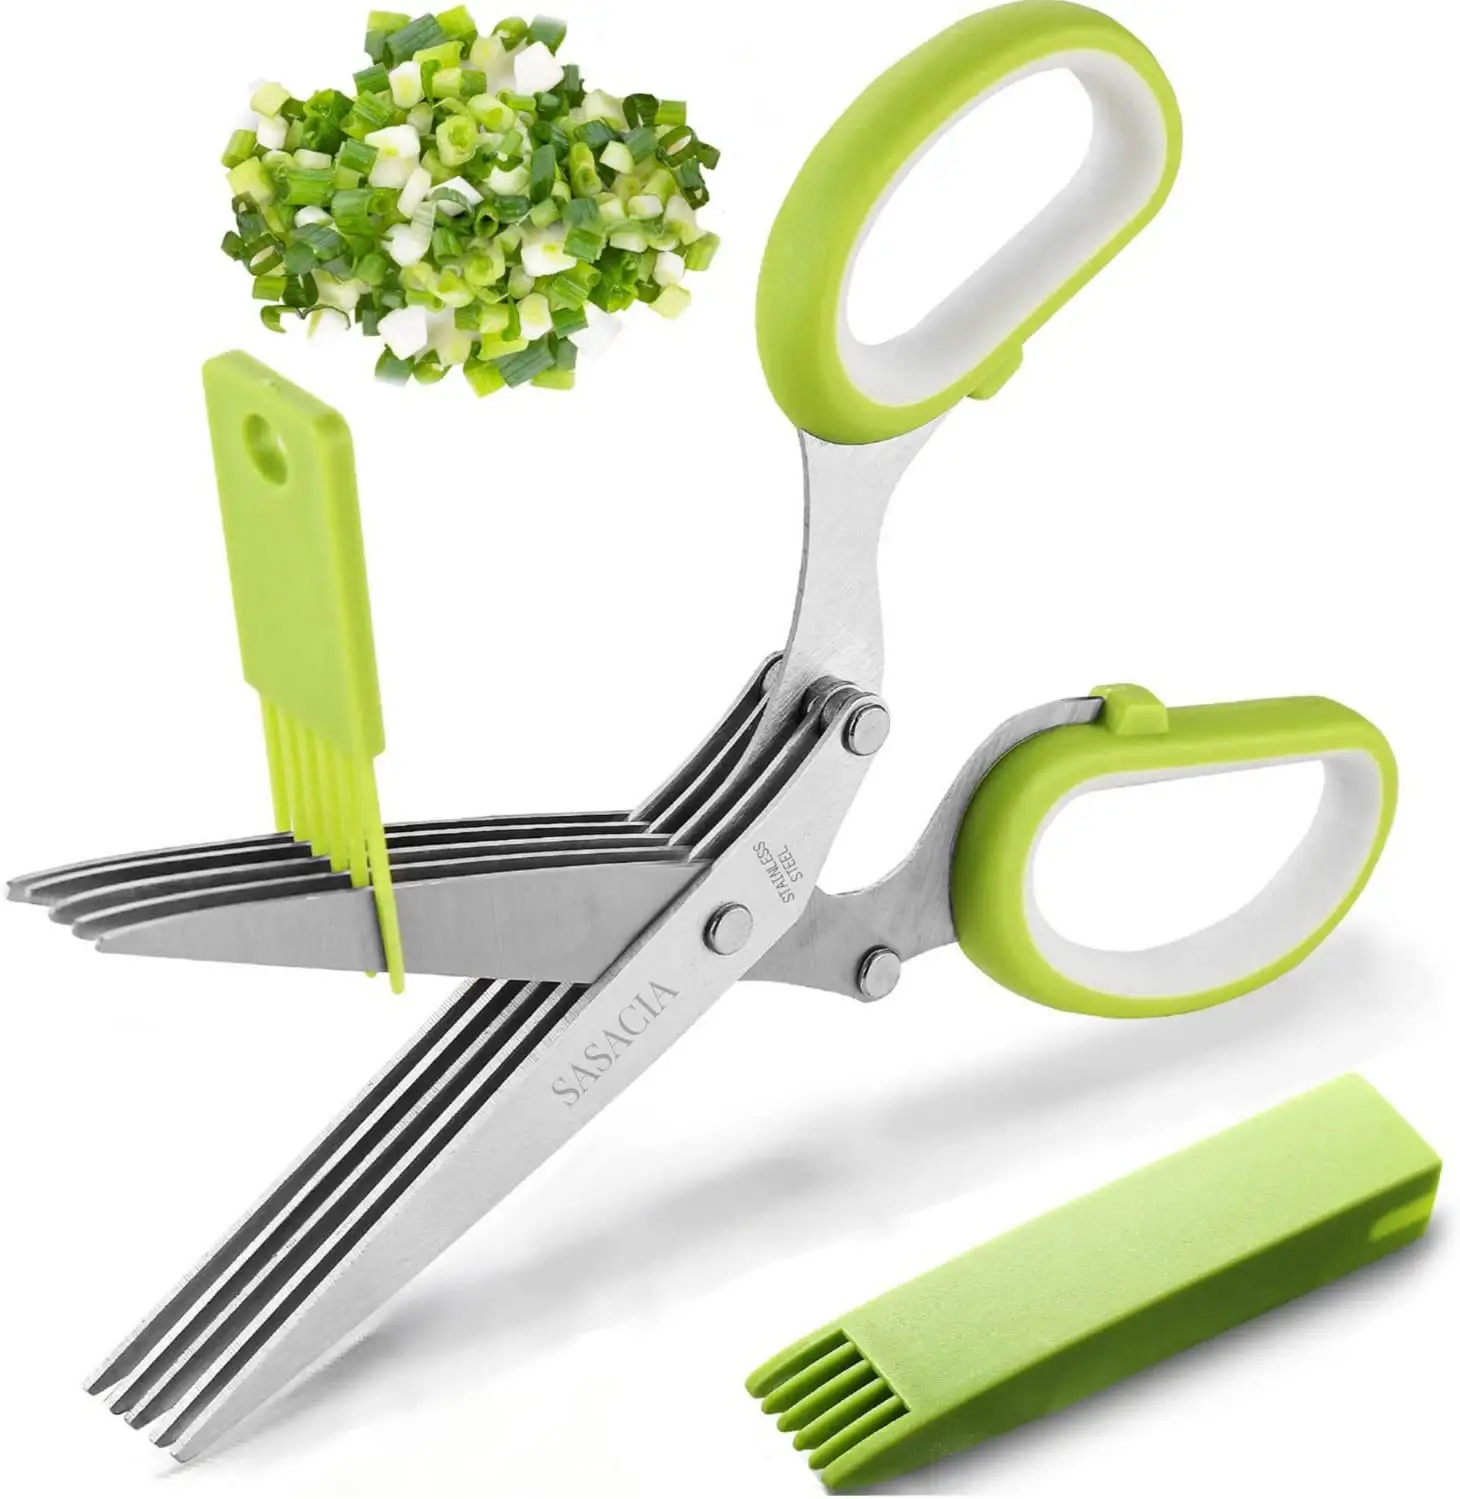 Küchen zubehör Gemüses chere Messer mit 5 Klingen und Gemüse Obsts ch neider Salat Schere